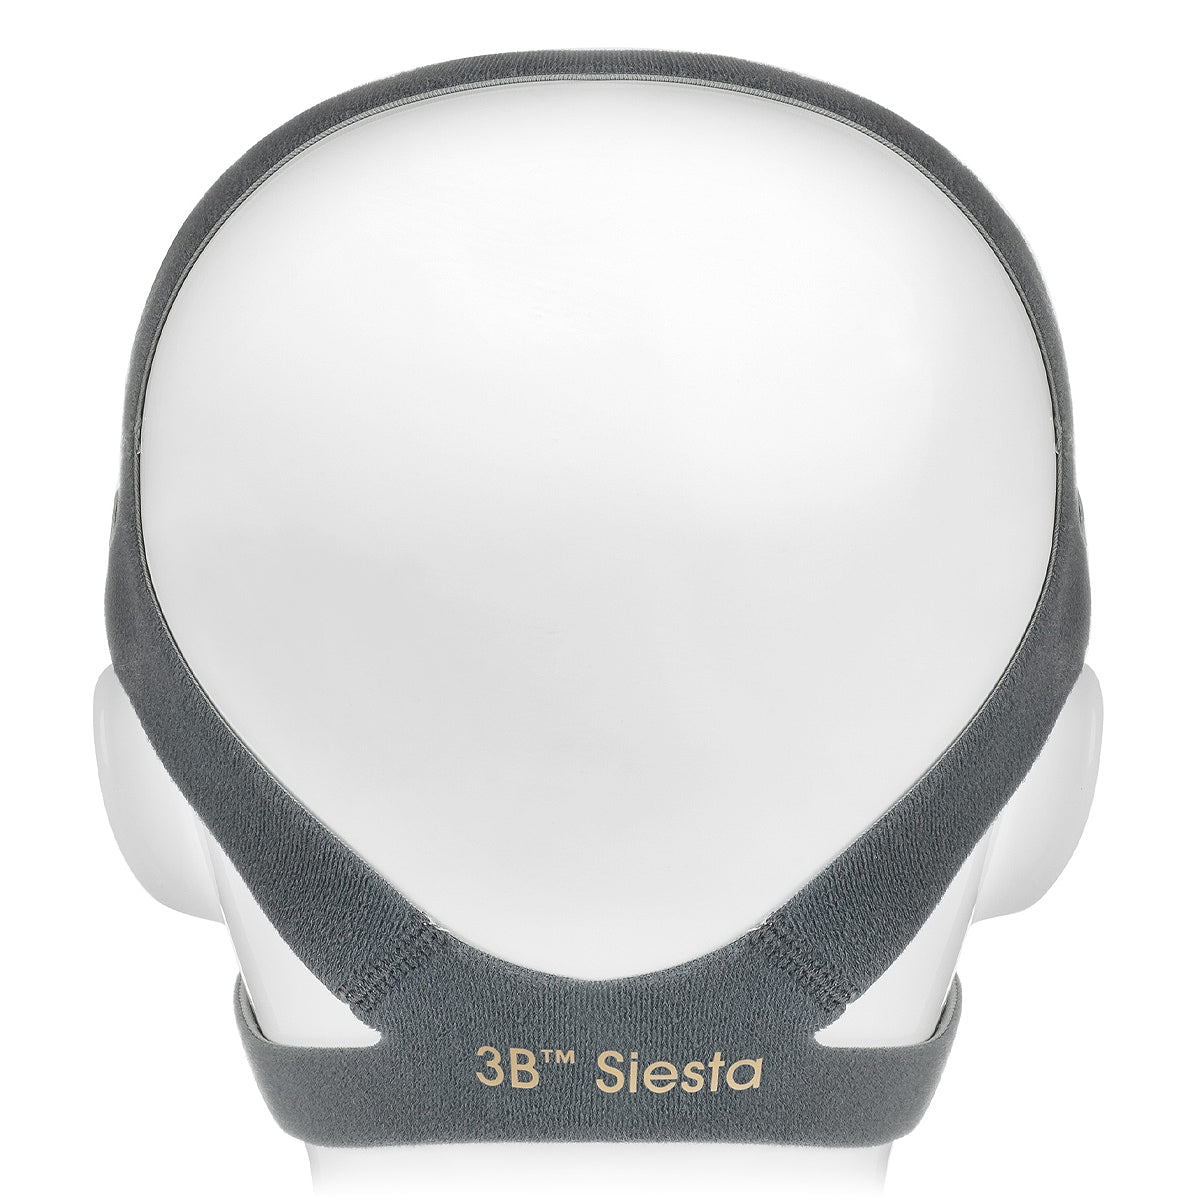 Headgear for Siesta Full Face CPAP/BiPAP Masks